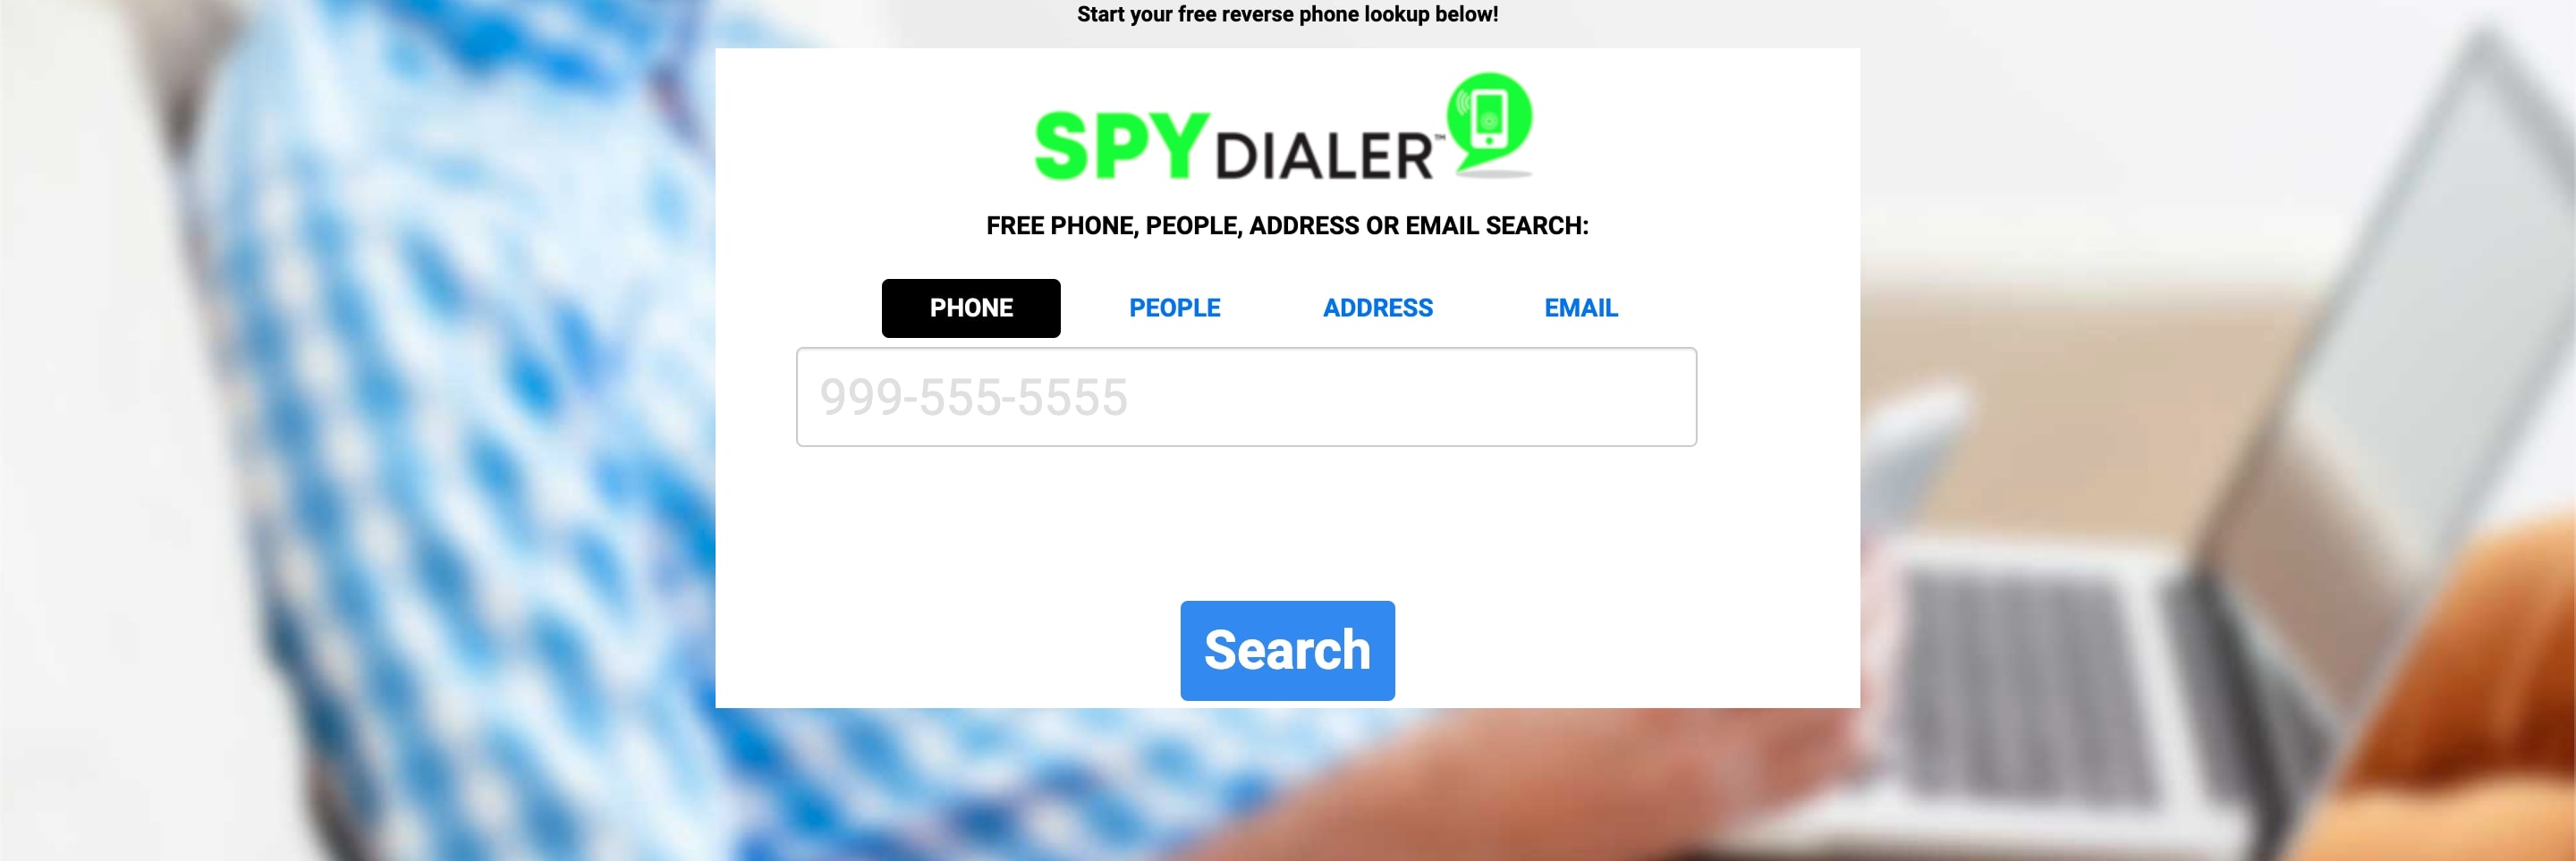 reverse lookup phone spy dialer